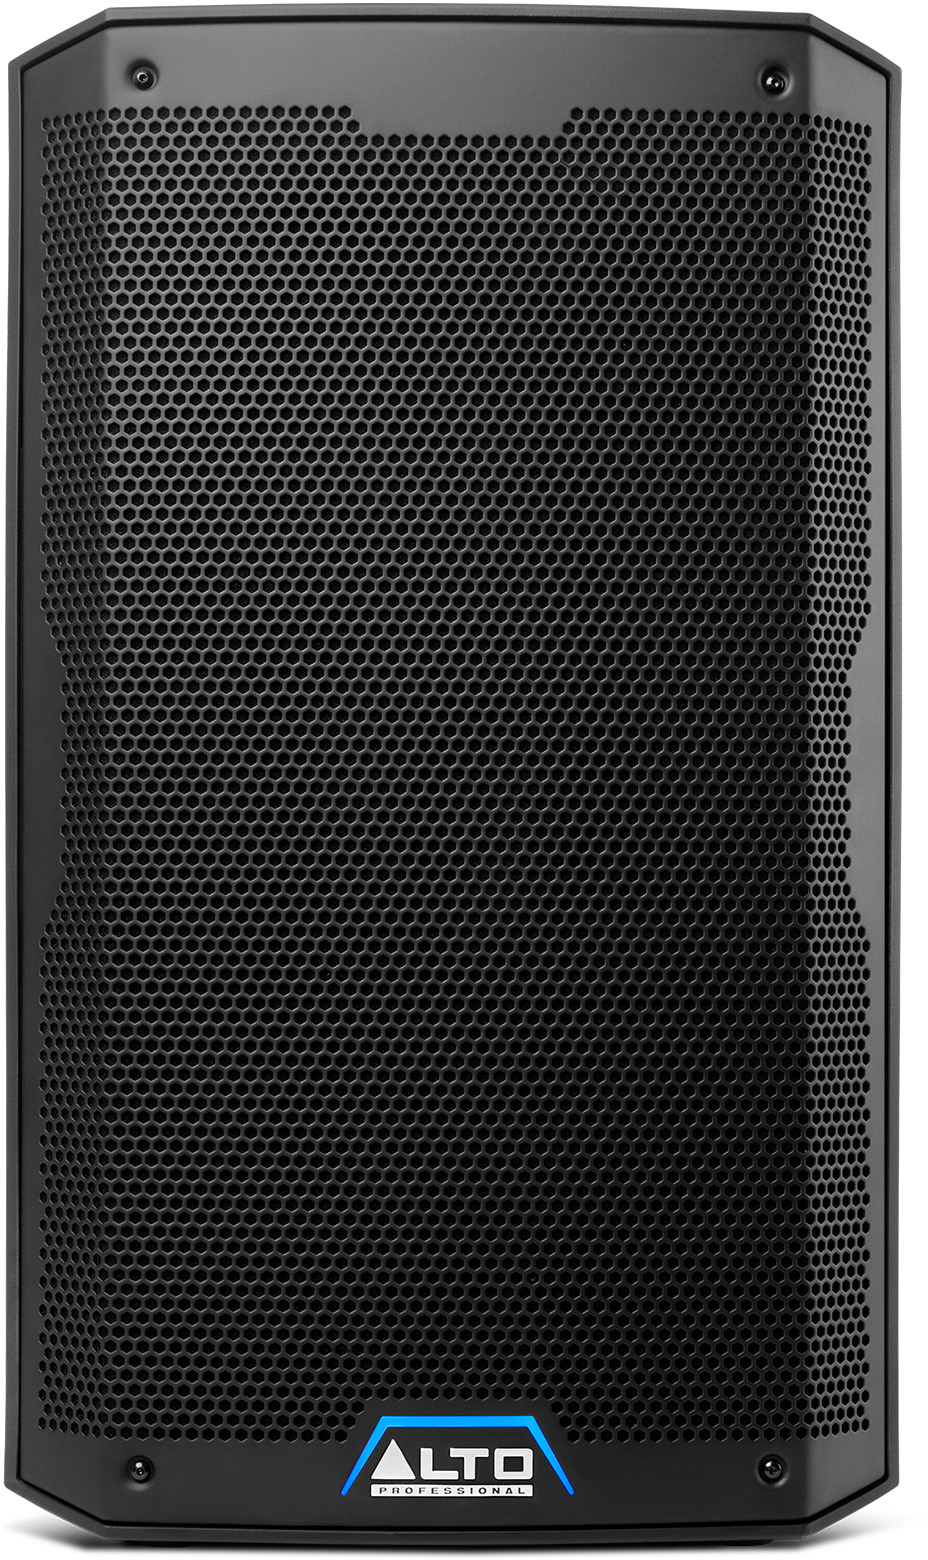 Alto Ts 410 - Active full-range speaker - Variation 3